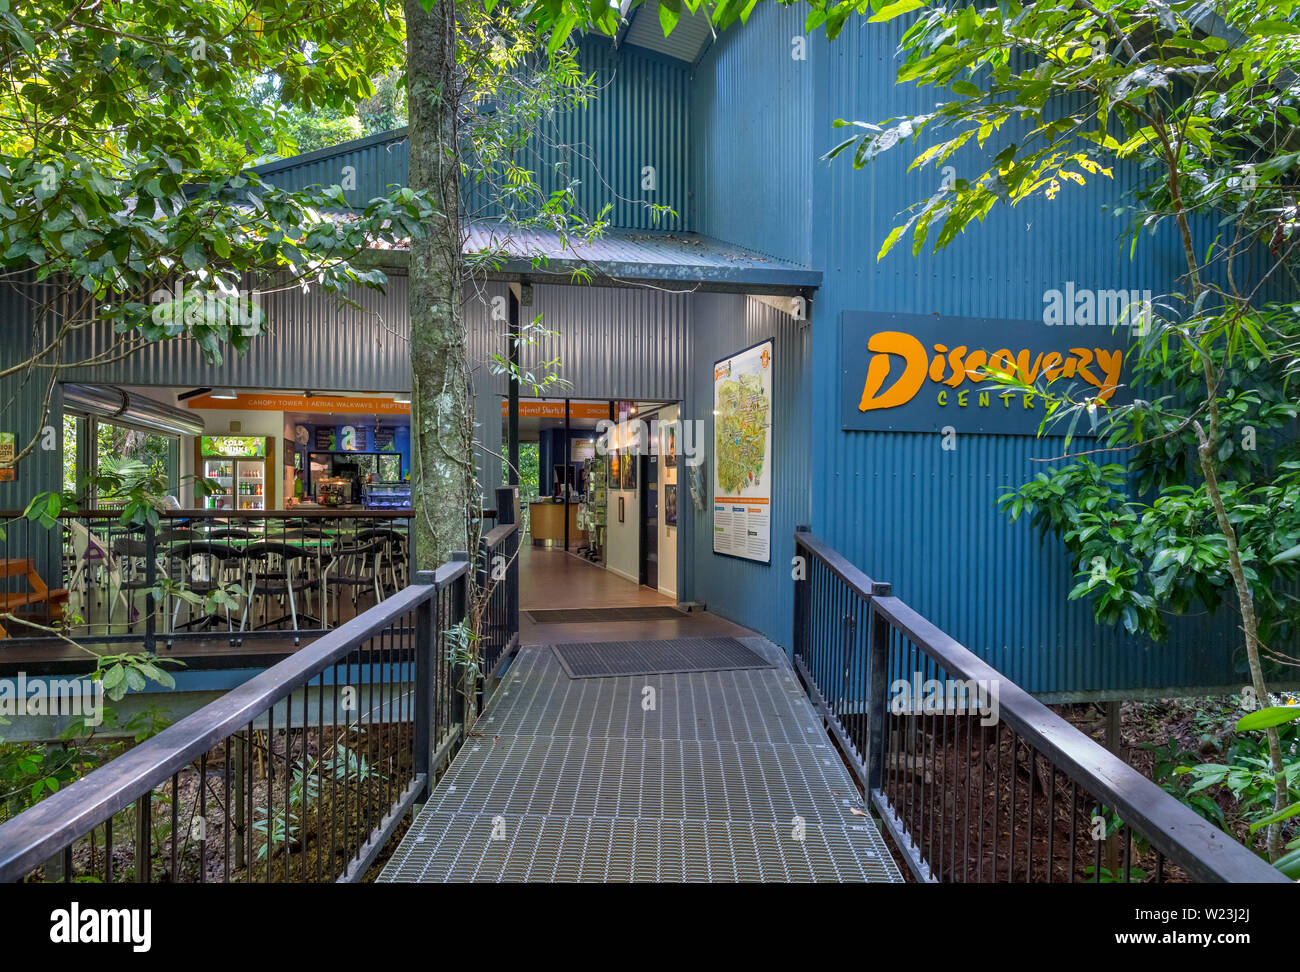 Entrée de la Daintree Discovery Centre, la forêt tropicale de Daintree, parc national de Daintree, Queensland, Australie Banque D'Images